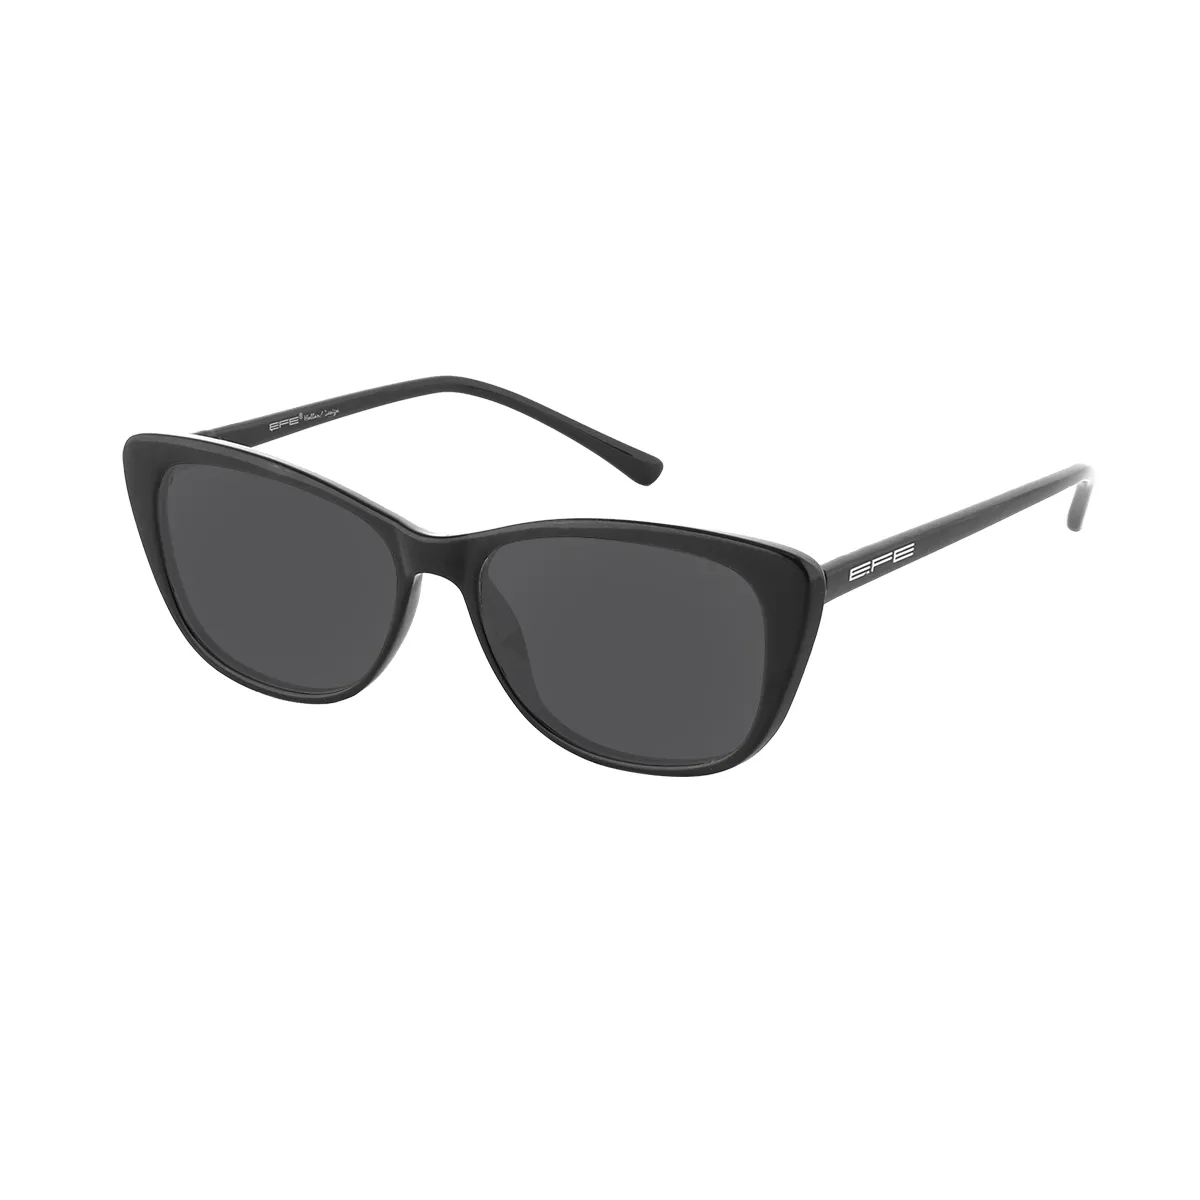 Angelina - Cat-eye Black Sunglasses for Women